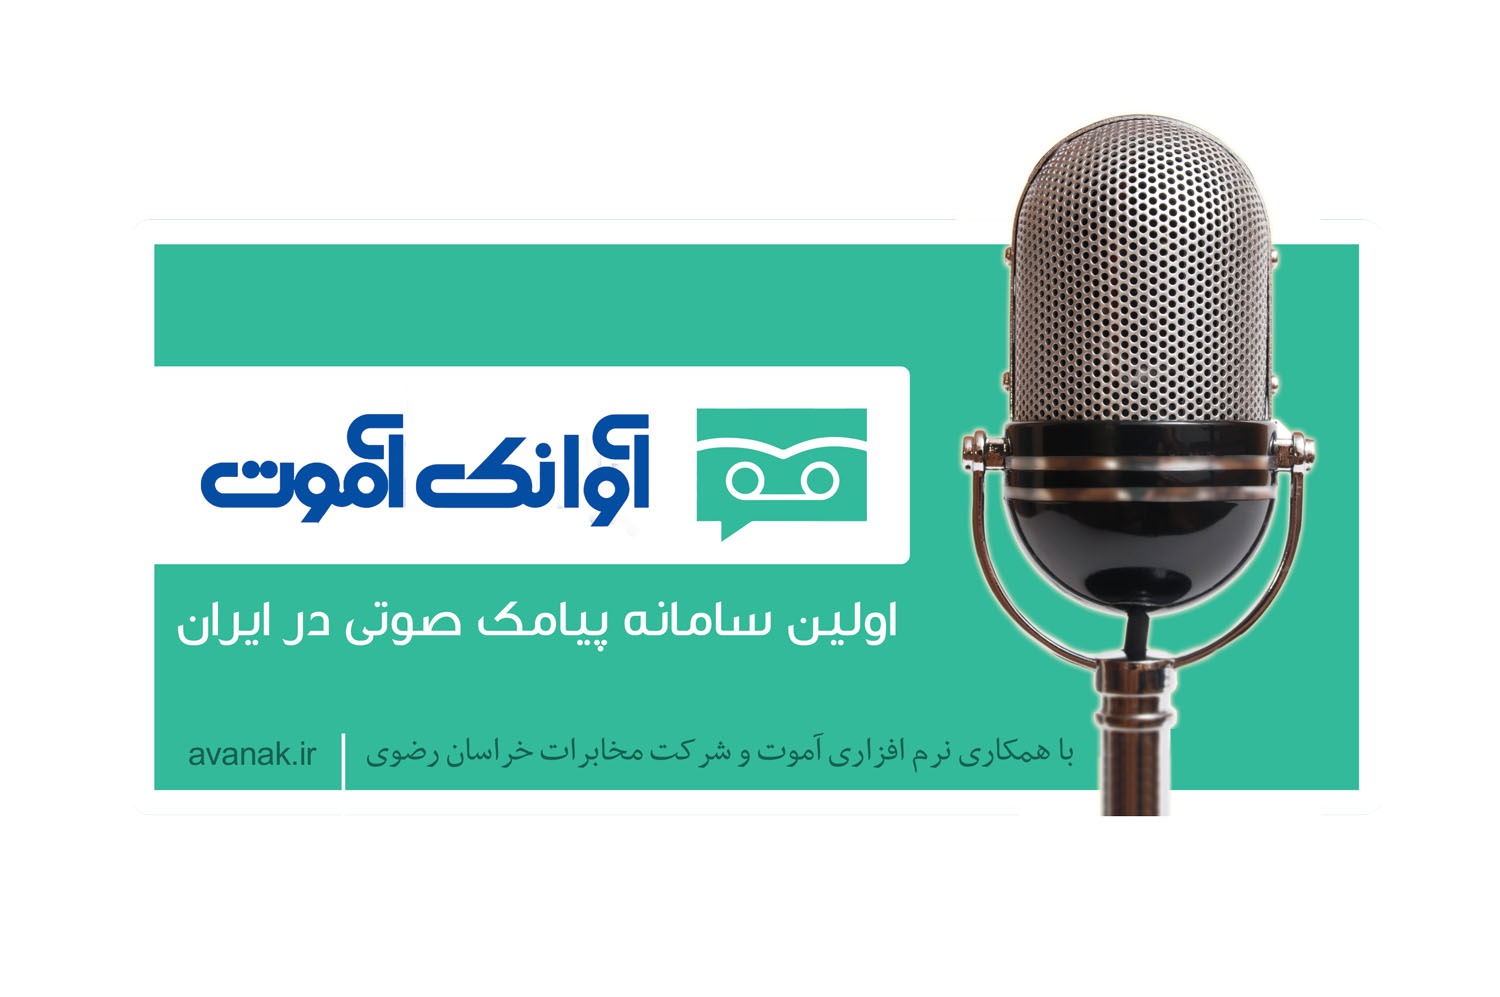 تحولی نوین در صنعت تبلیغات/ معرفی اولین سامانه پیامک صوتی در ایران